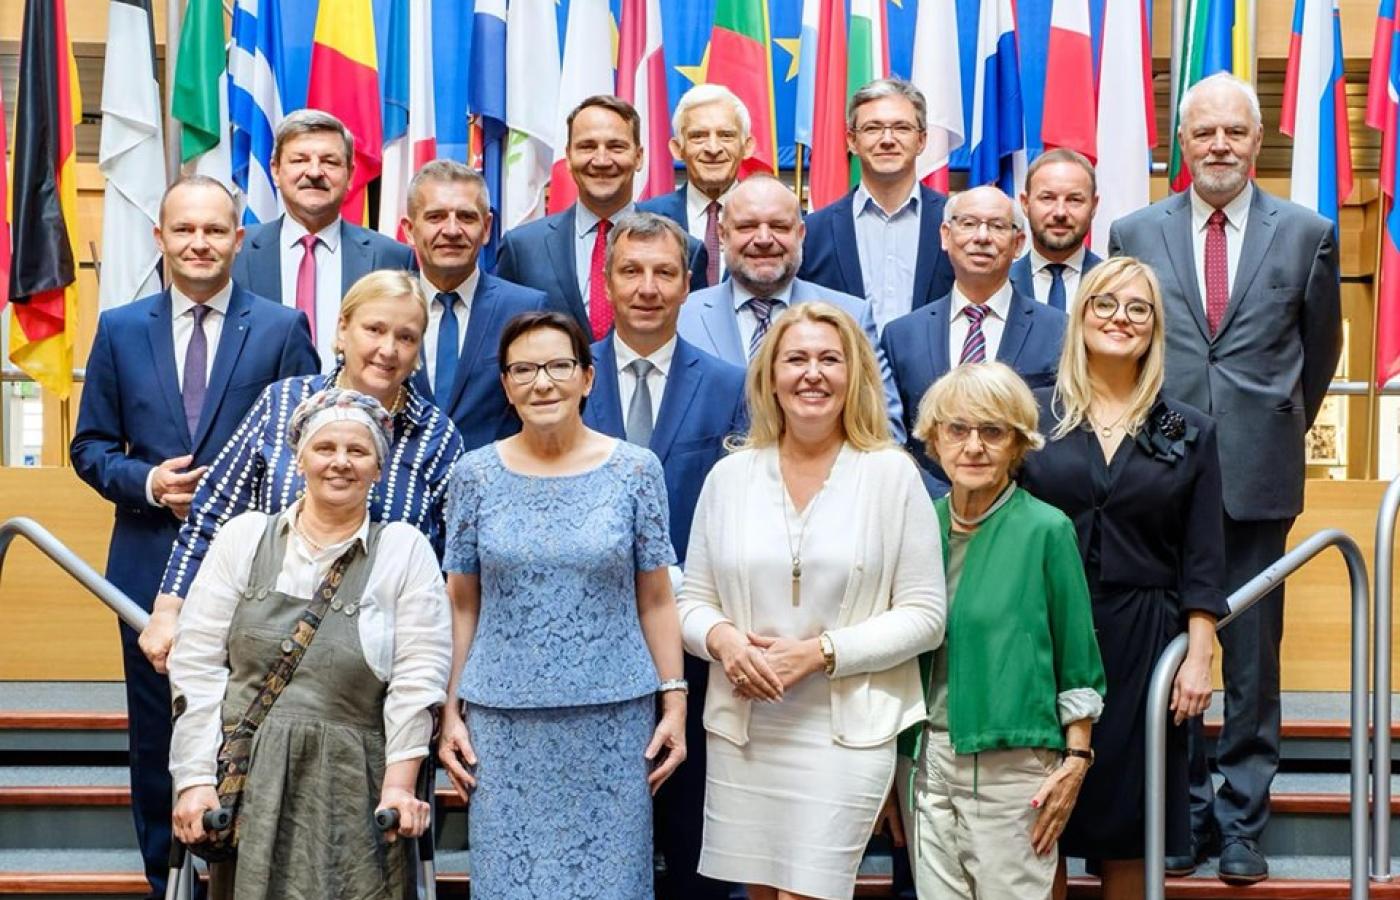 W czerwcu 2019 r. Ewa Kopacz została wybrana także na wiceprzewodniczącą frakcji chadeckiej w europarlamencie.